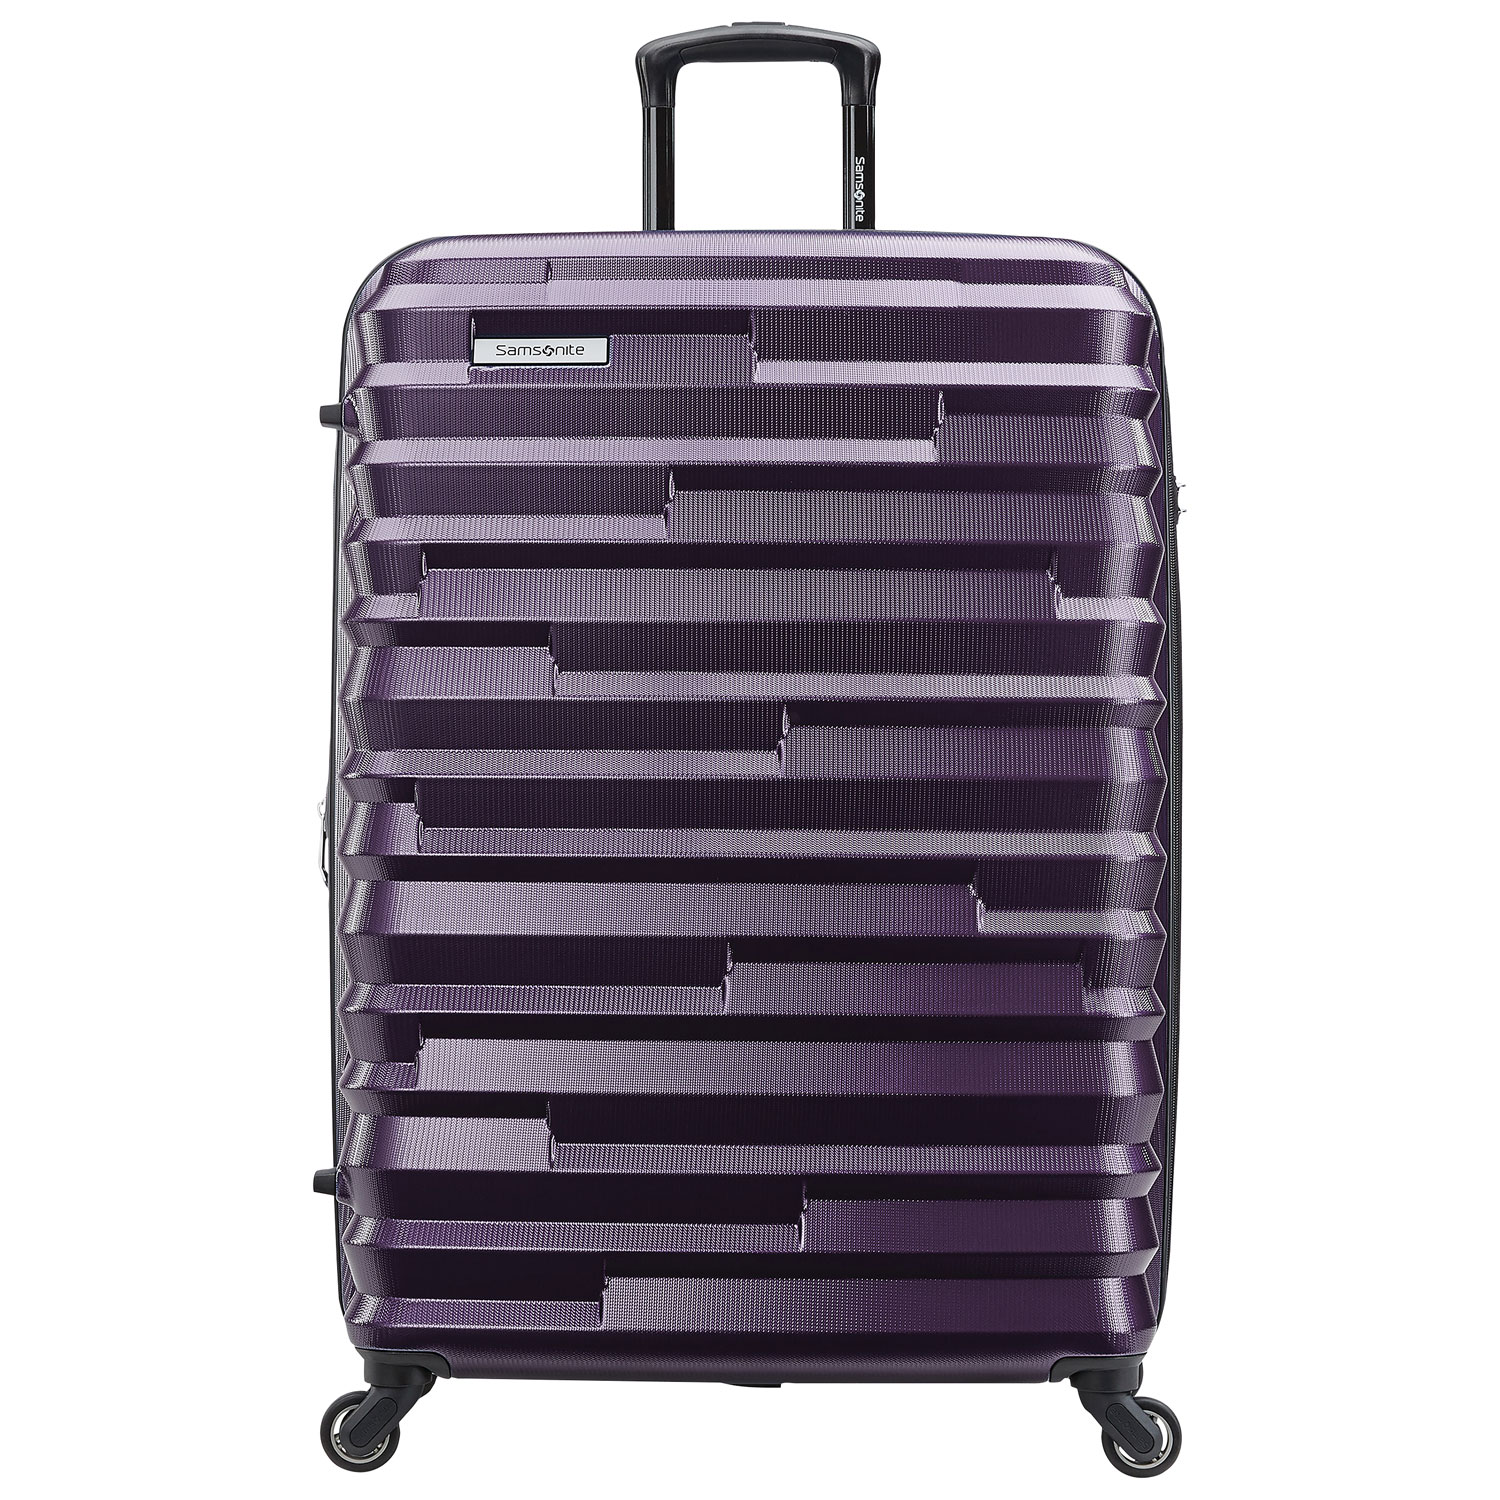 Samsonite Ziplite 4.0 28" Hard Side Expandable Luggage - Purple